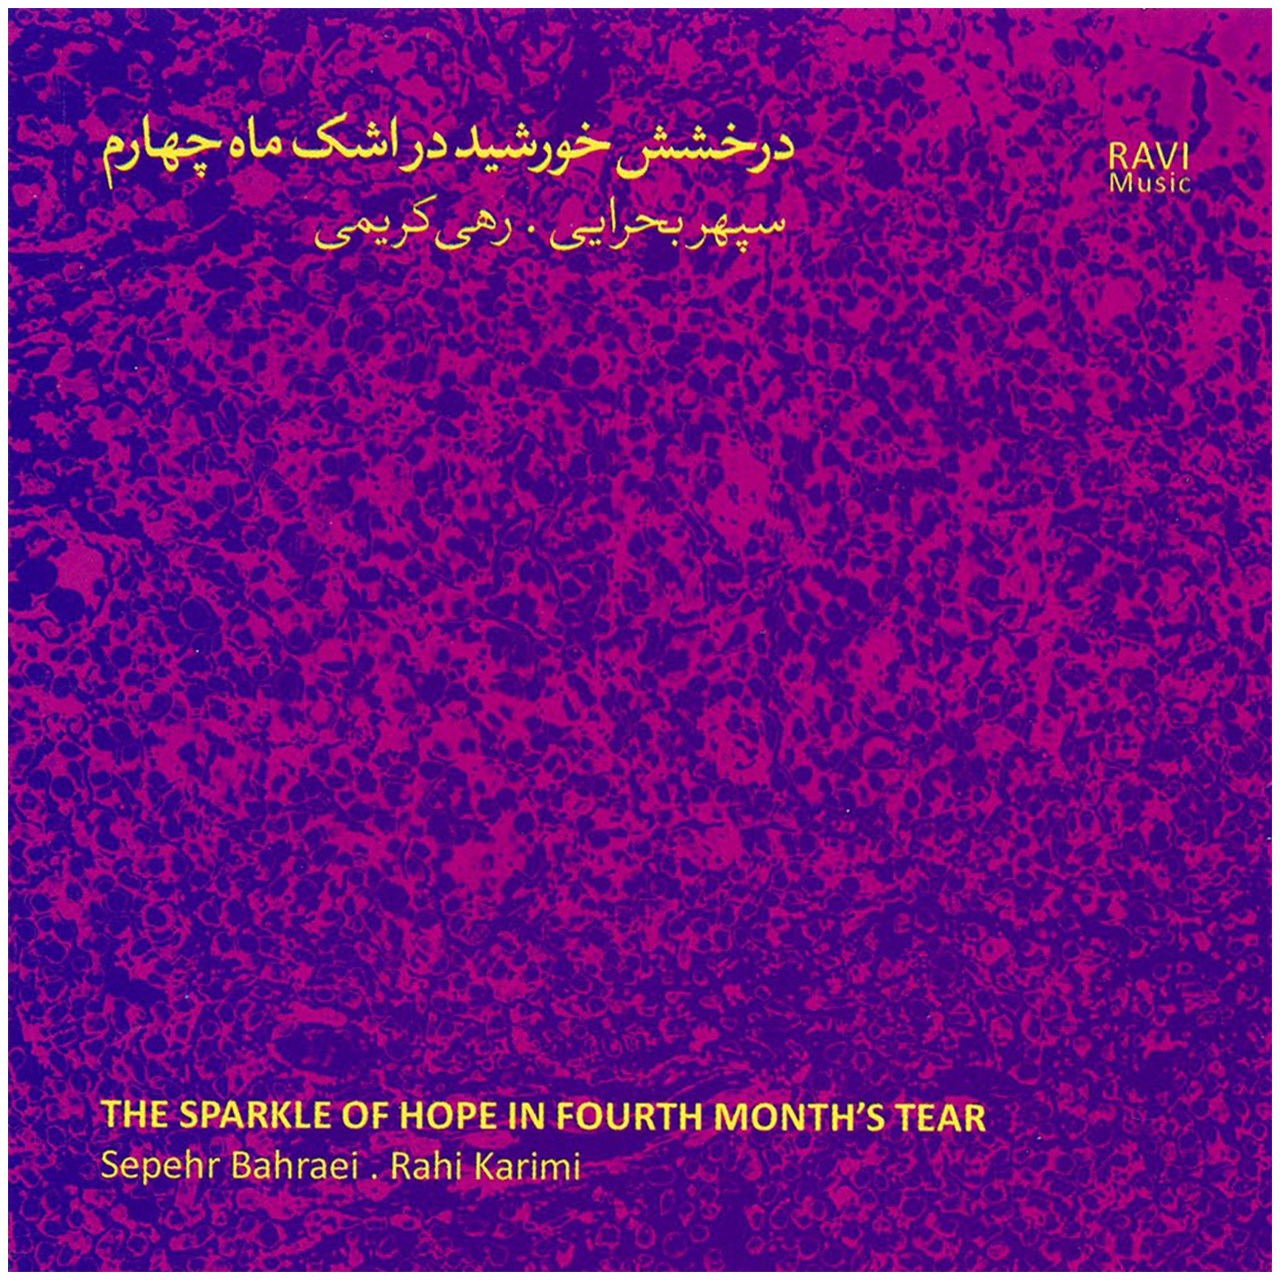 آلبوم موسیقی دخشش خورشید در اشک ماه چهارماثر سپهربحرایی